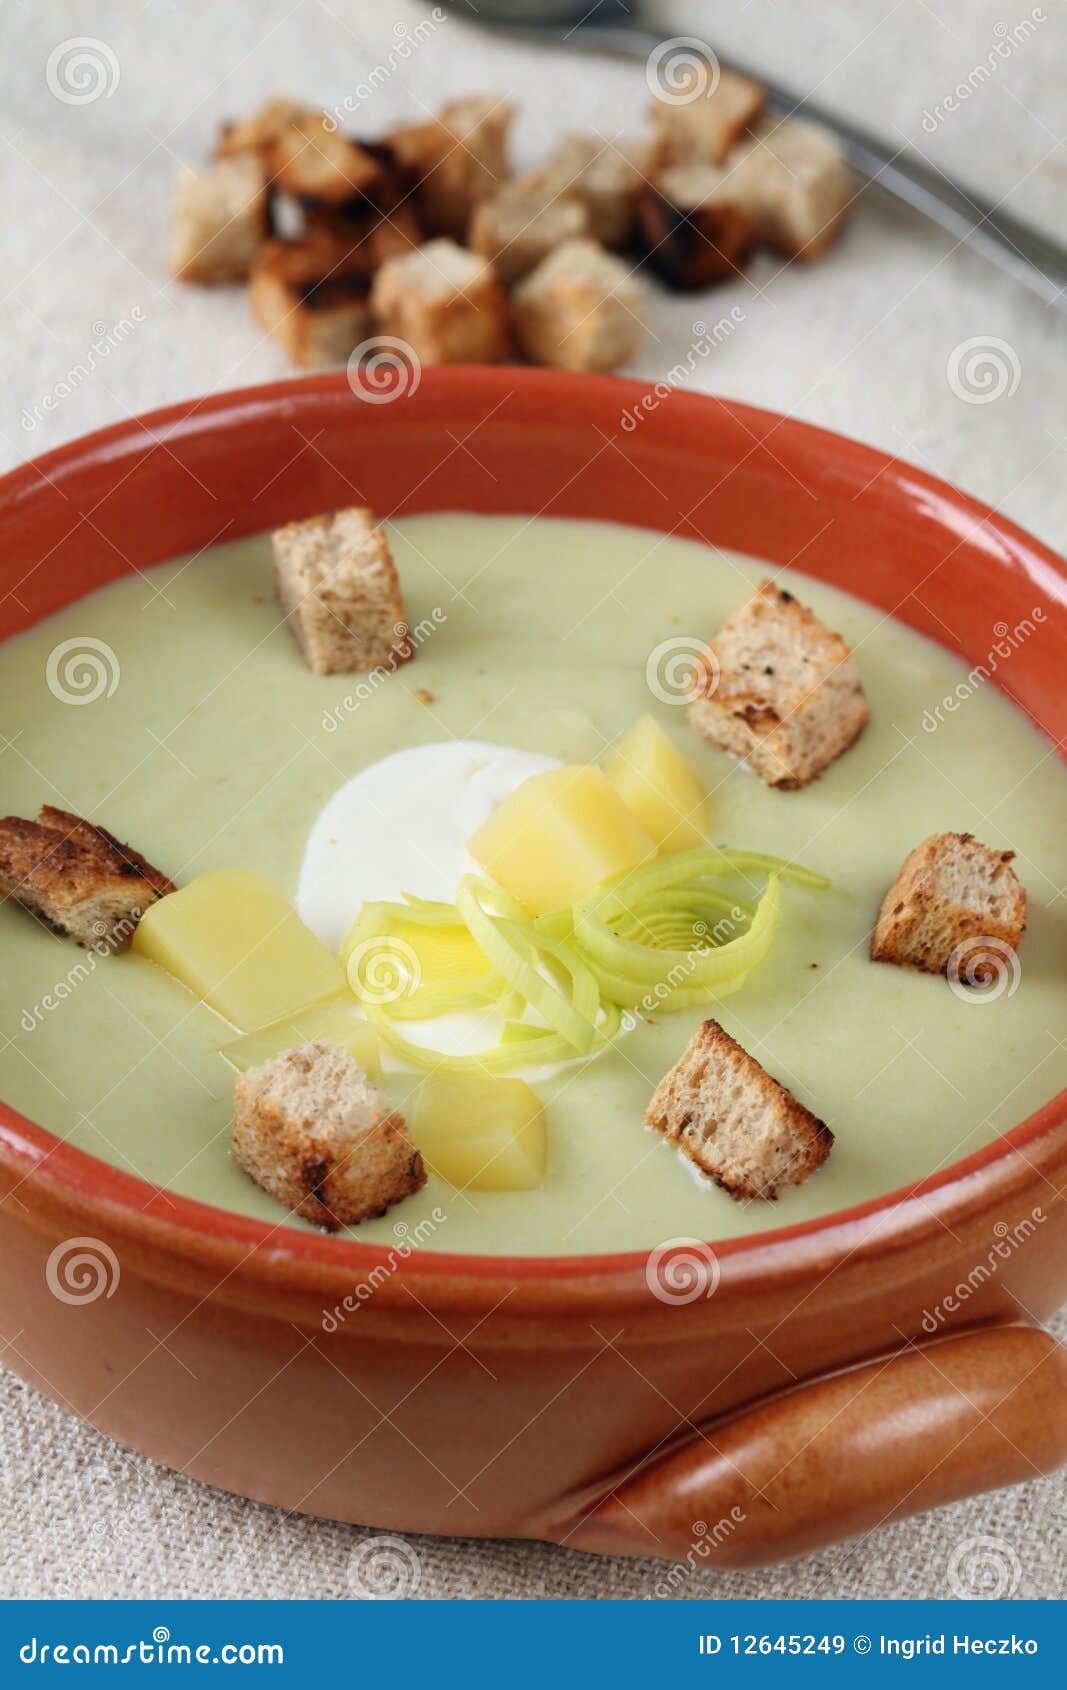 韭菜疙瘩汤怎么做_韭菜疙瘩汤的做法_豆果美食